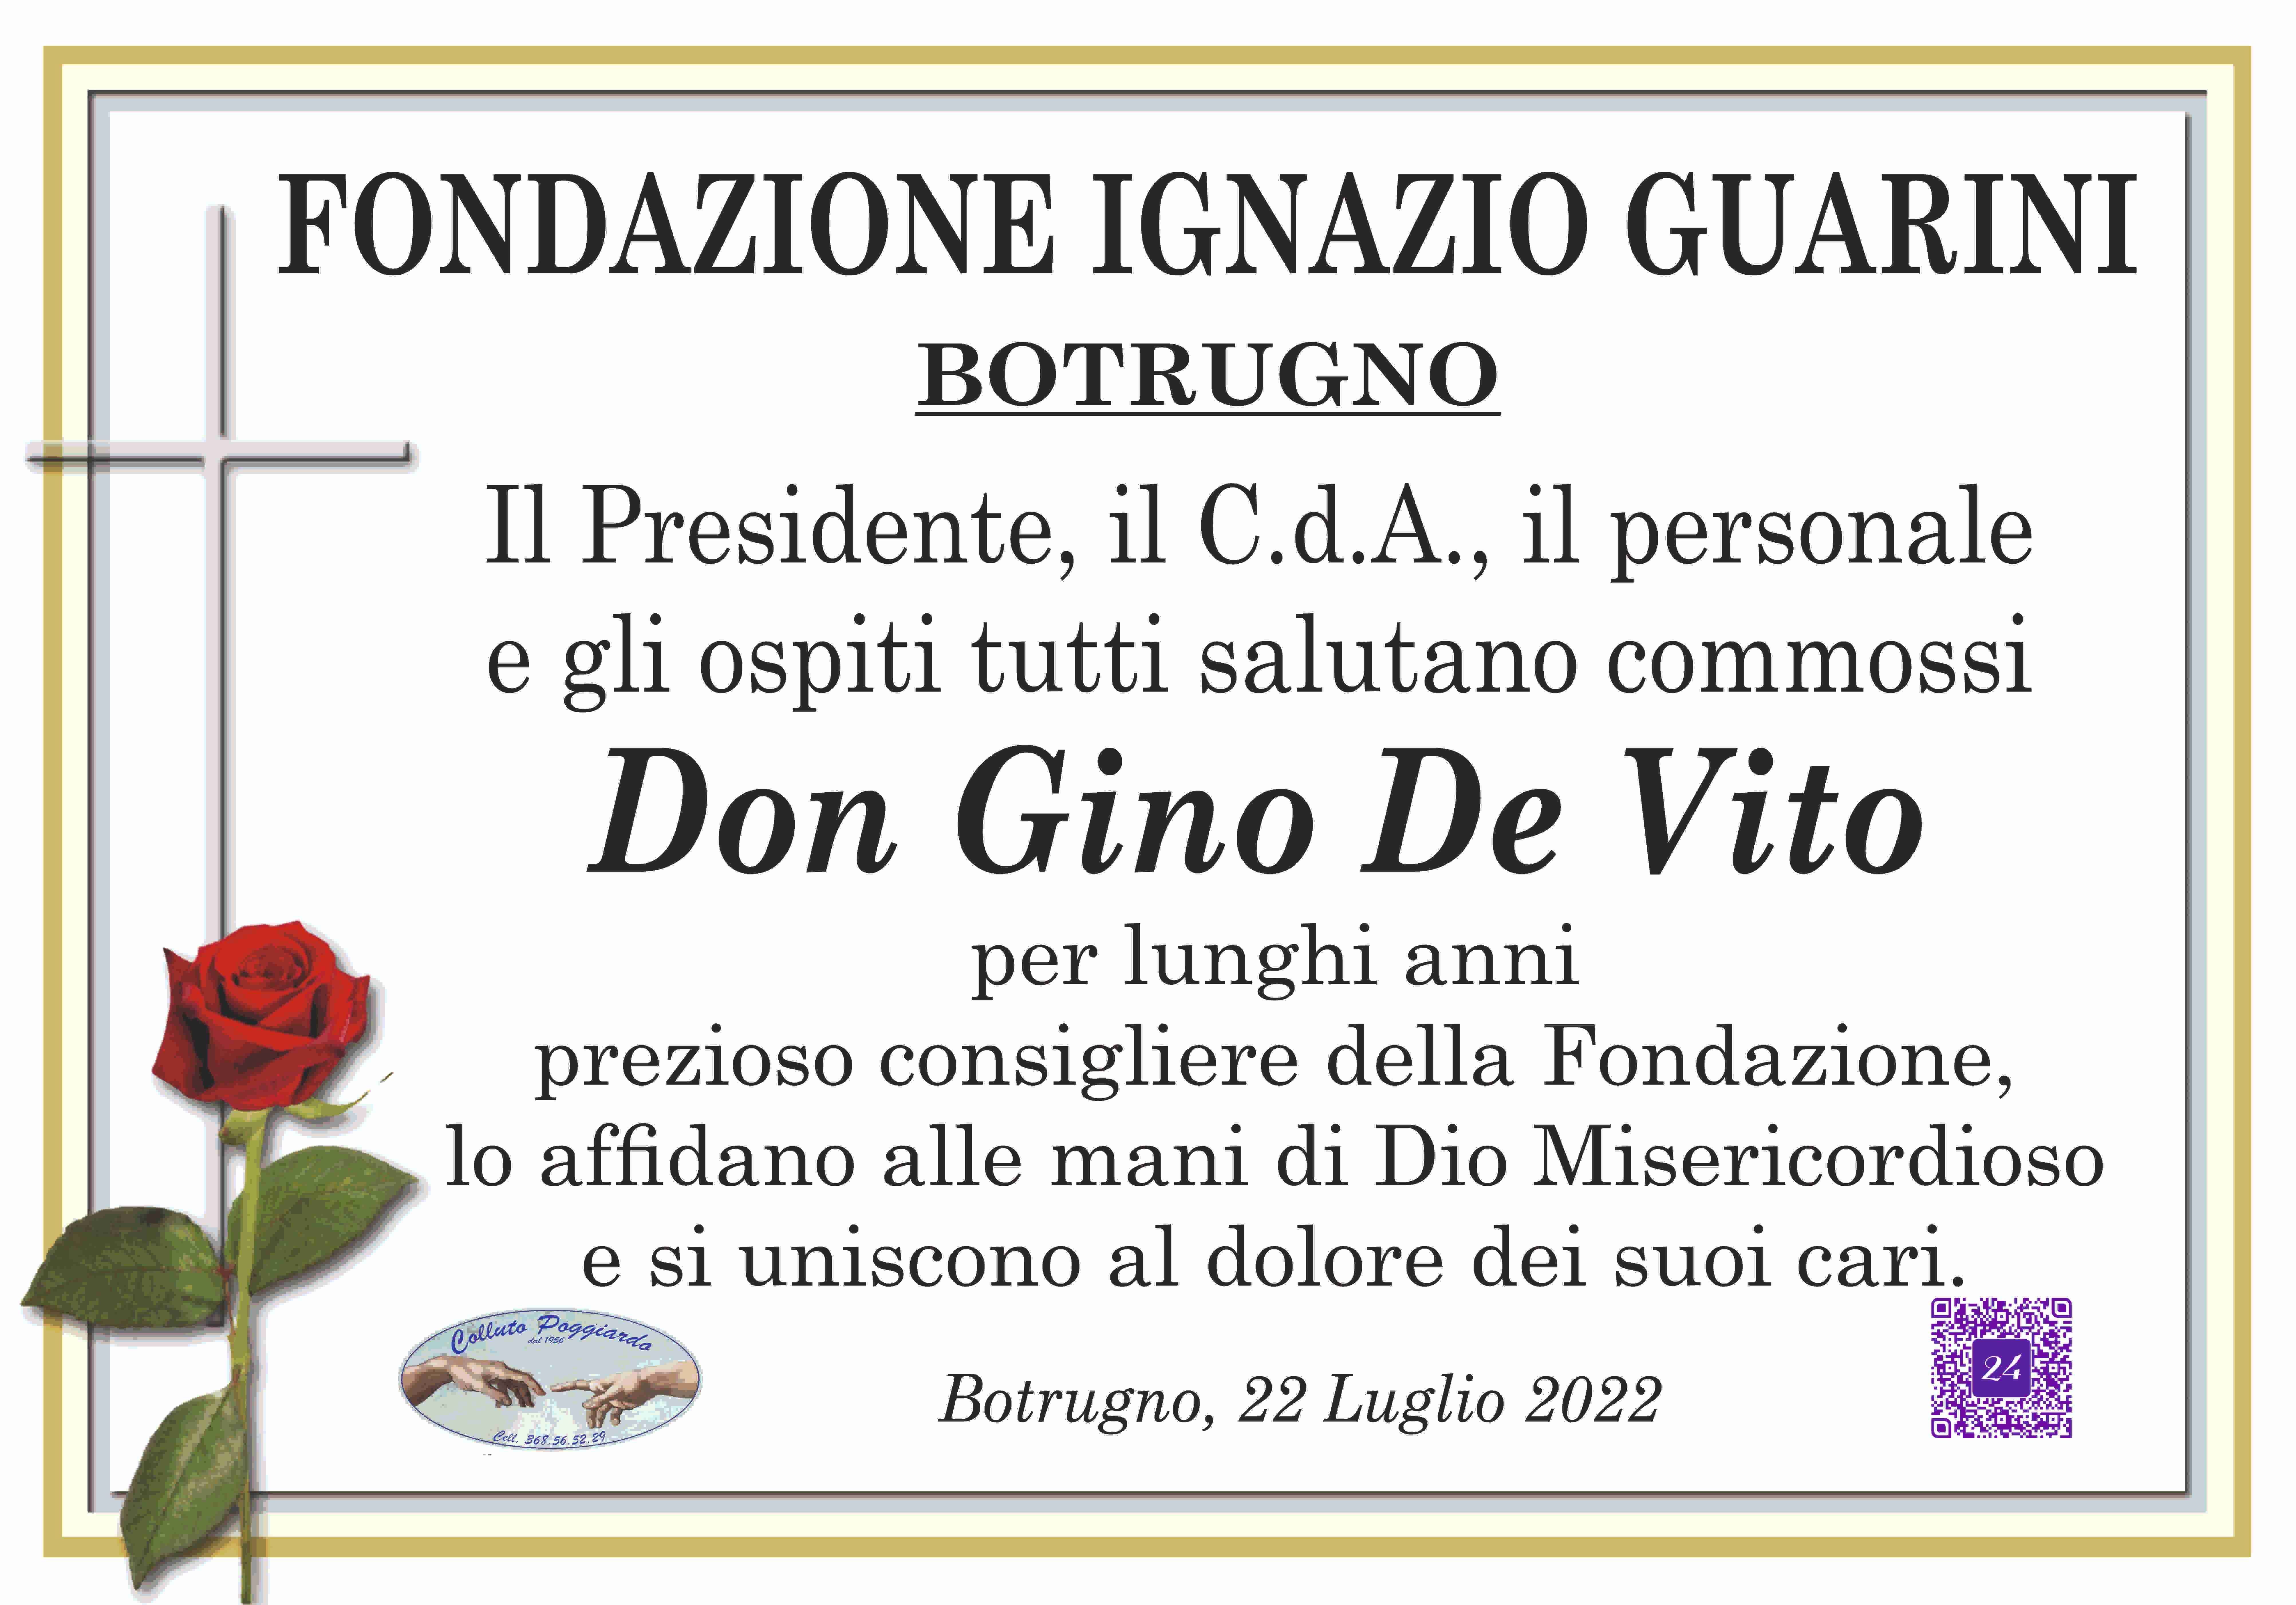 Don Gino De Vito